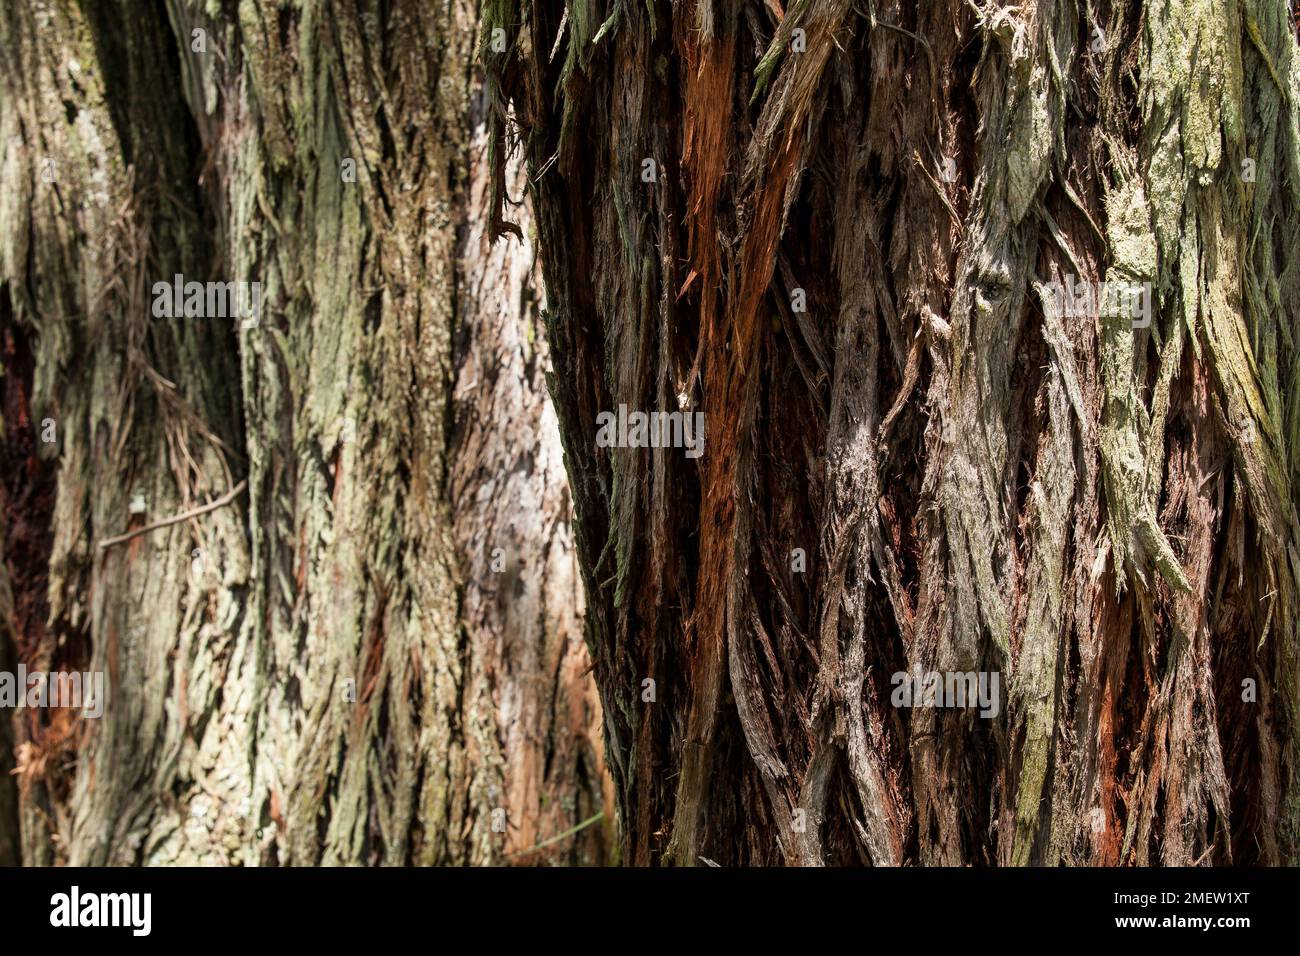 Nature; Natural texture of eucalyptus tree trunk. Stock Photo